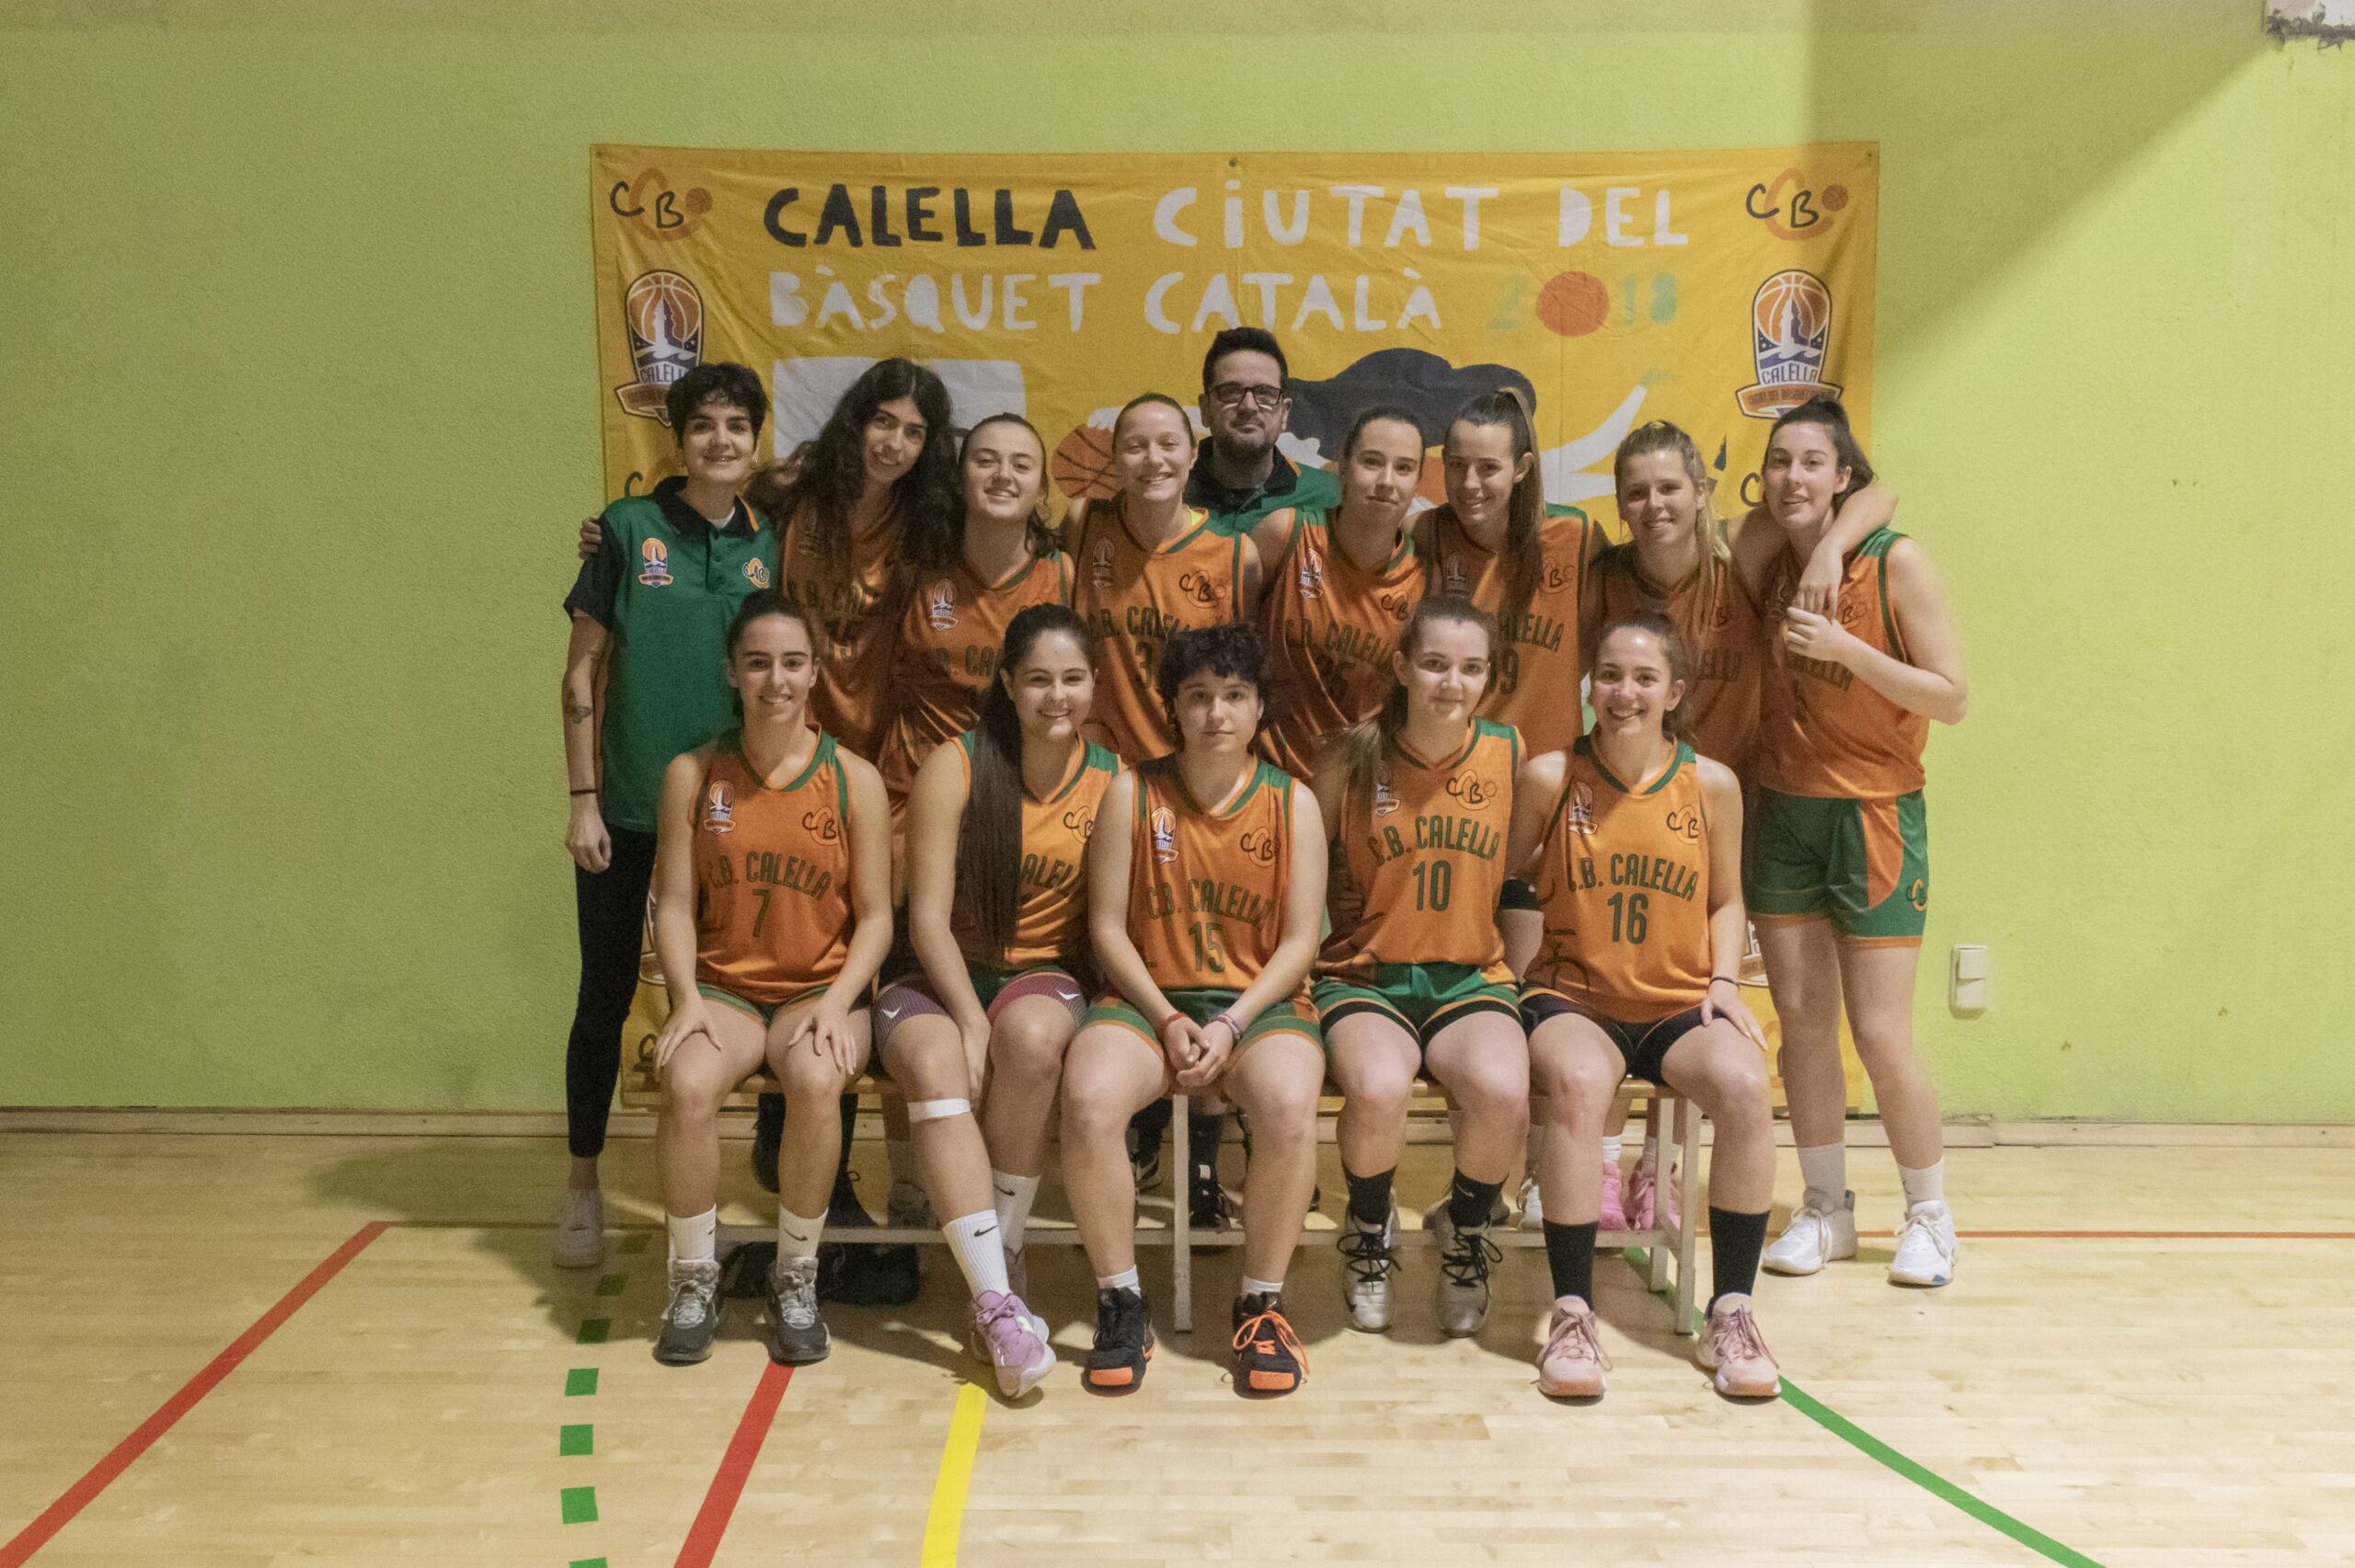 CB Calella - Temporada 2020-2021 Cadet A